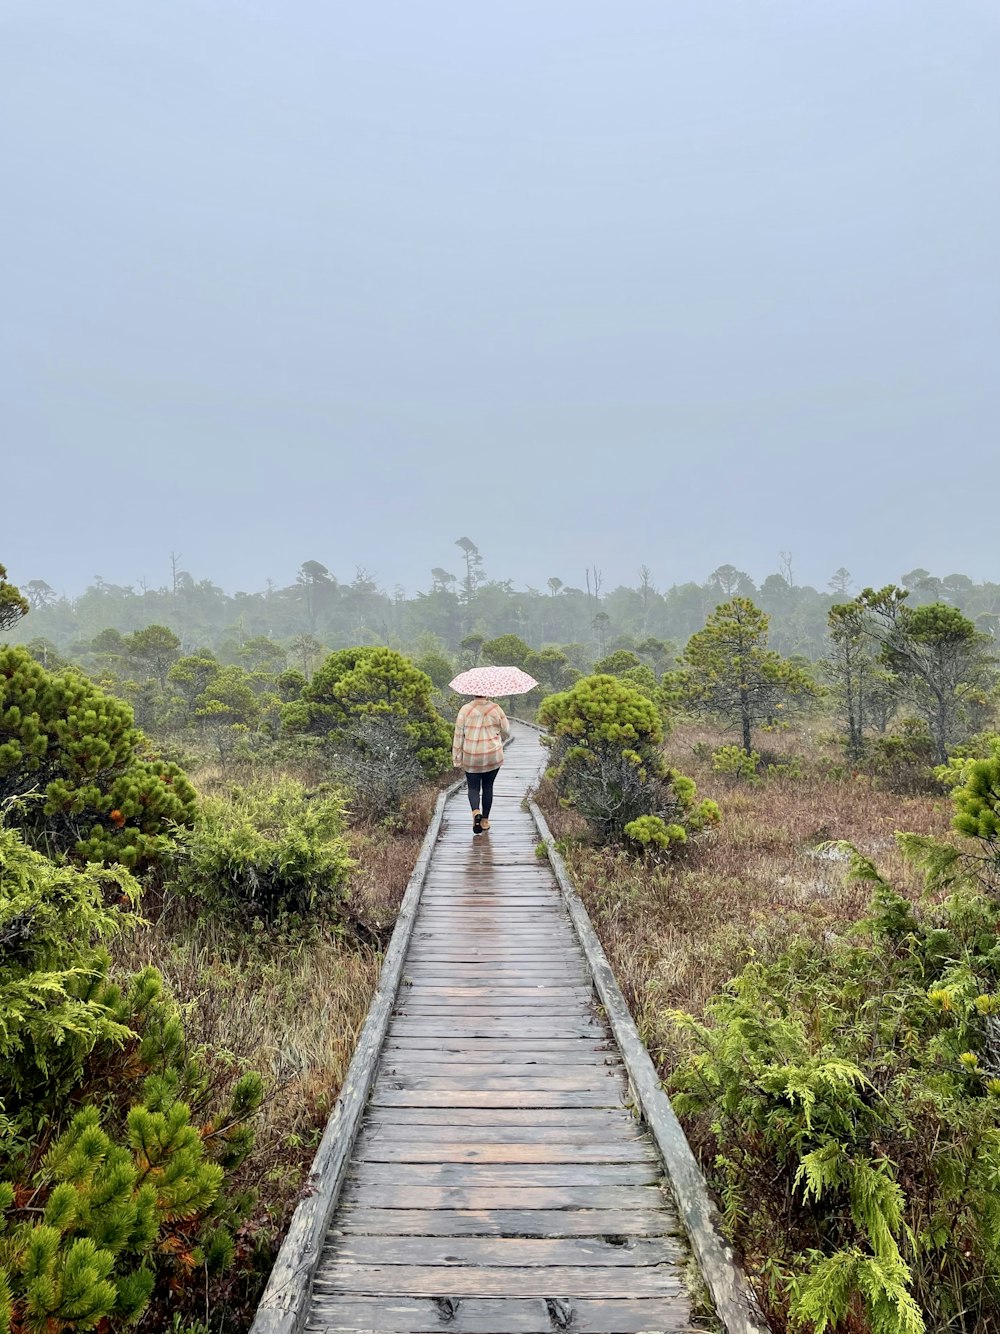 Una persona caminando por una pasarela de madera sosteniendo un paraguas